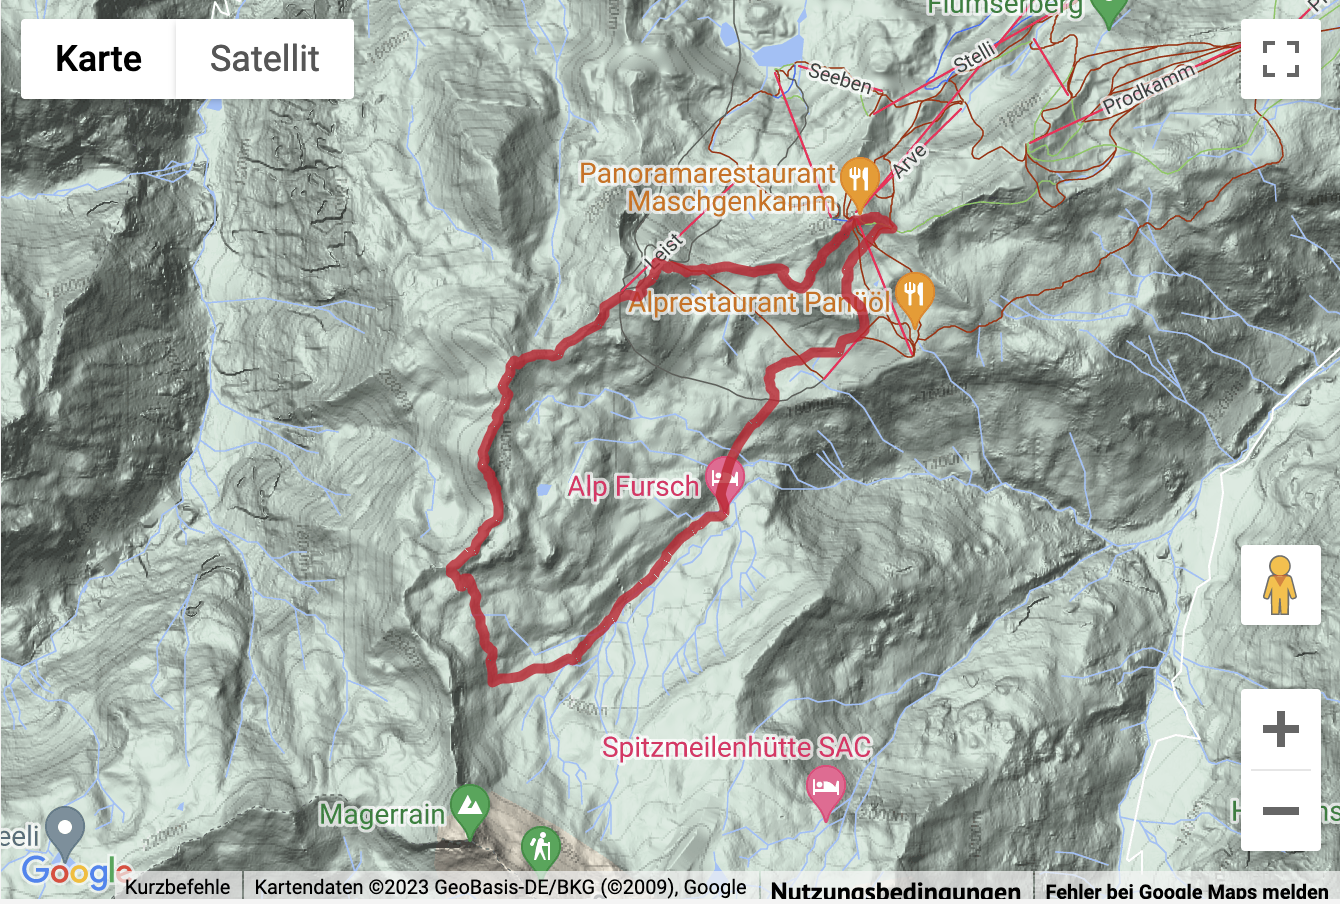 Carte de situation avec l'itinéraire pour la Randonnée de 3 sommets dans les Flumserberge